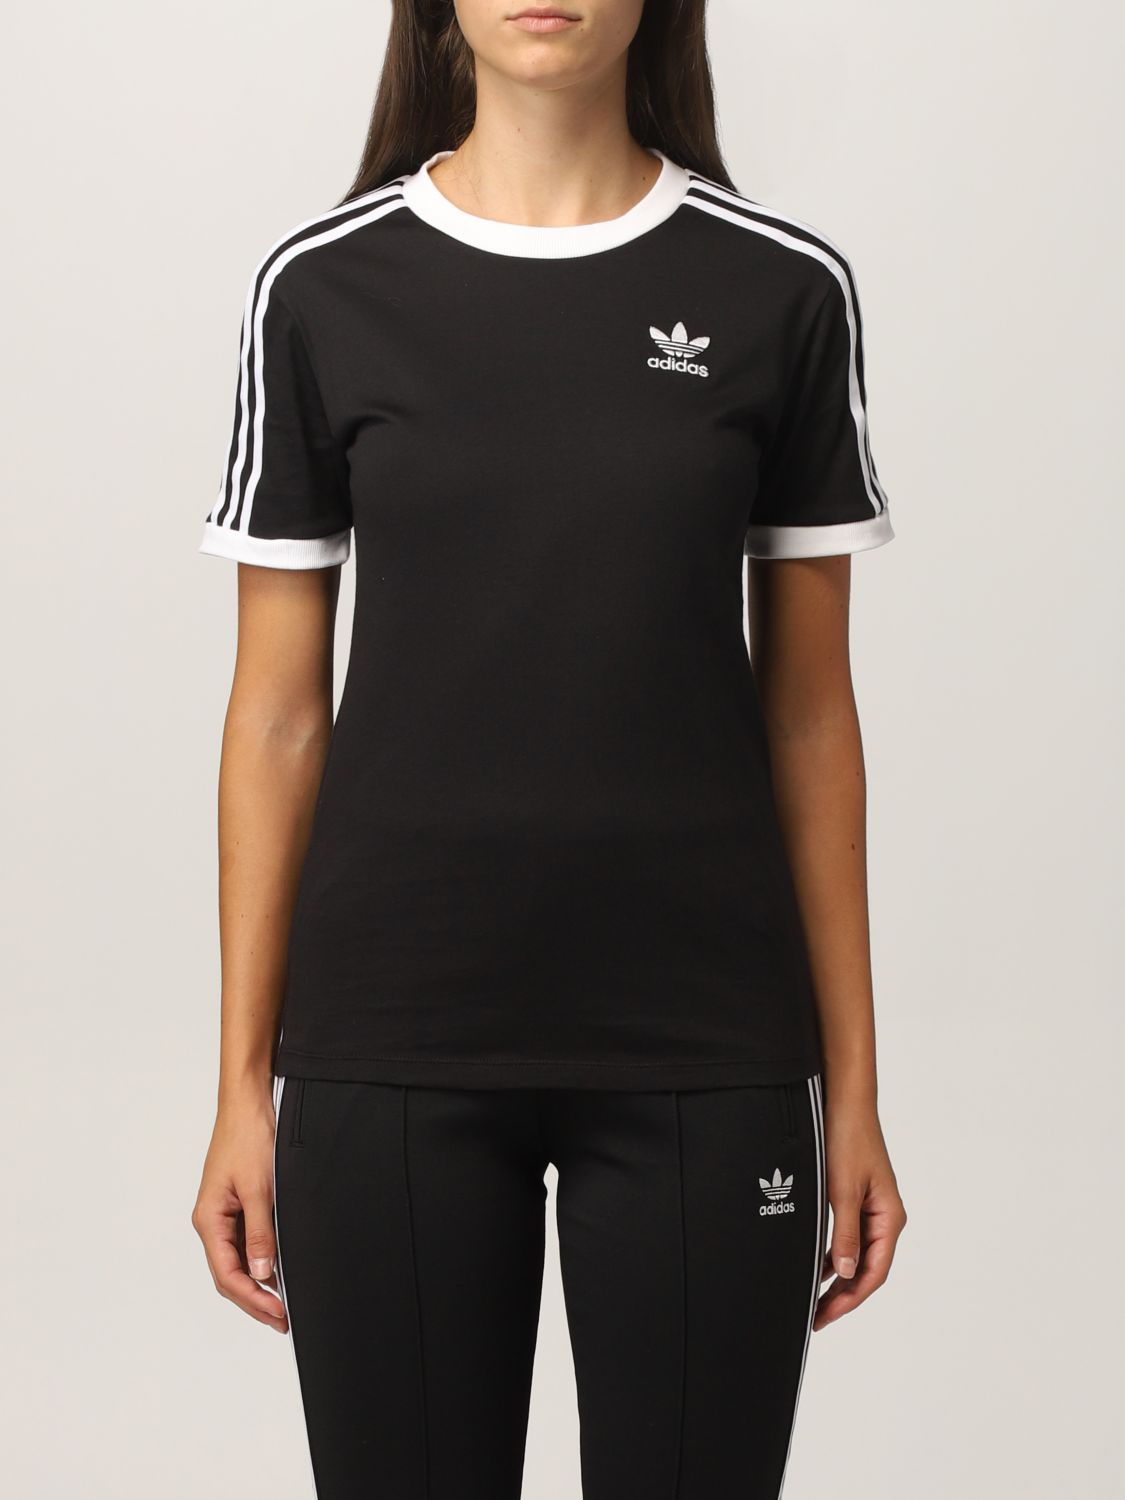 Indkøbscenter korn overfladisk ADIDAS ORIGINALS: T-shirt women | T-Shirt Adidas Originals Women Black | T-Shirt  Adidas Originals GN2900 GIGLIO.COM